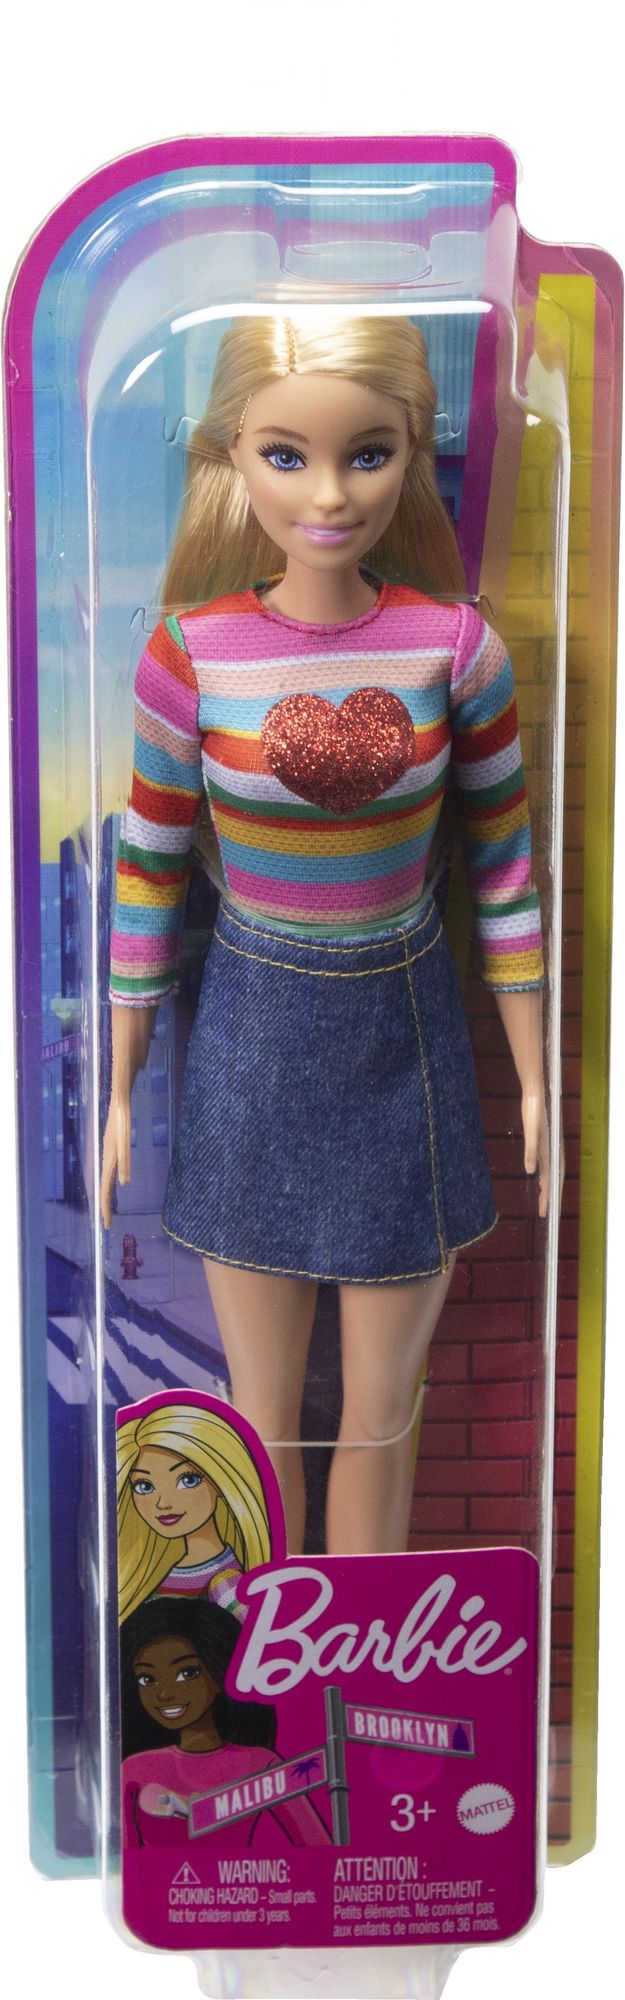 Barbie - Barbie Malibu Puppe\' kaufen - Spielwaren